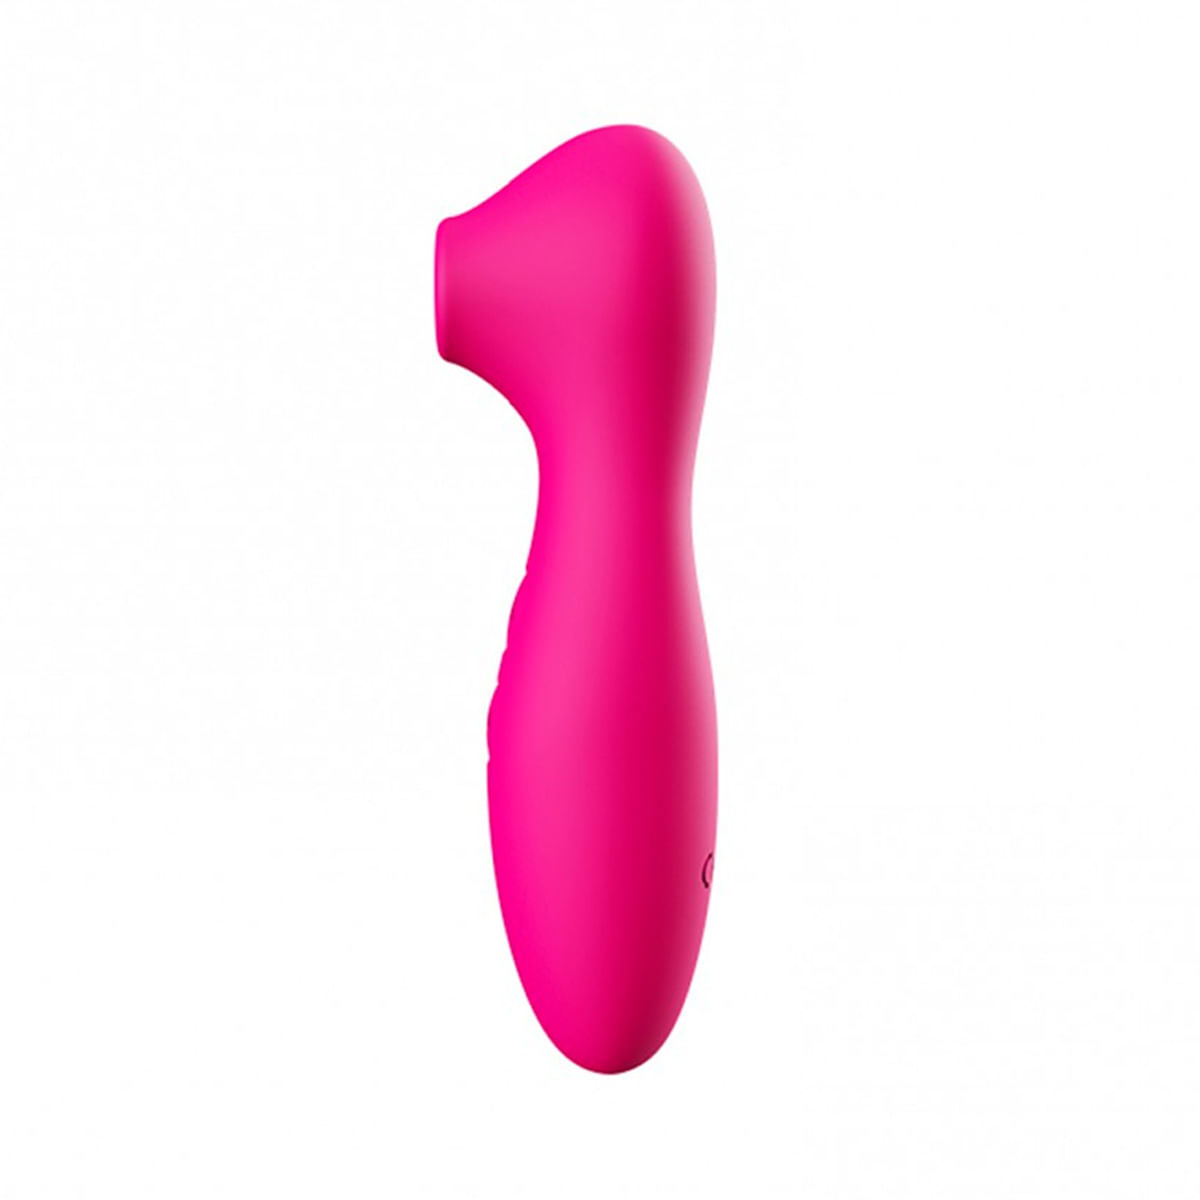 Estimulador de Clitoris com 7 Modos de Vibração e Pulsação Vip Mix